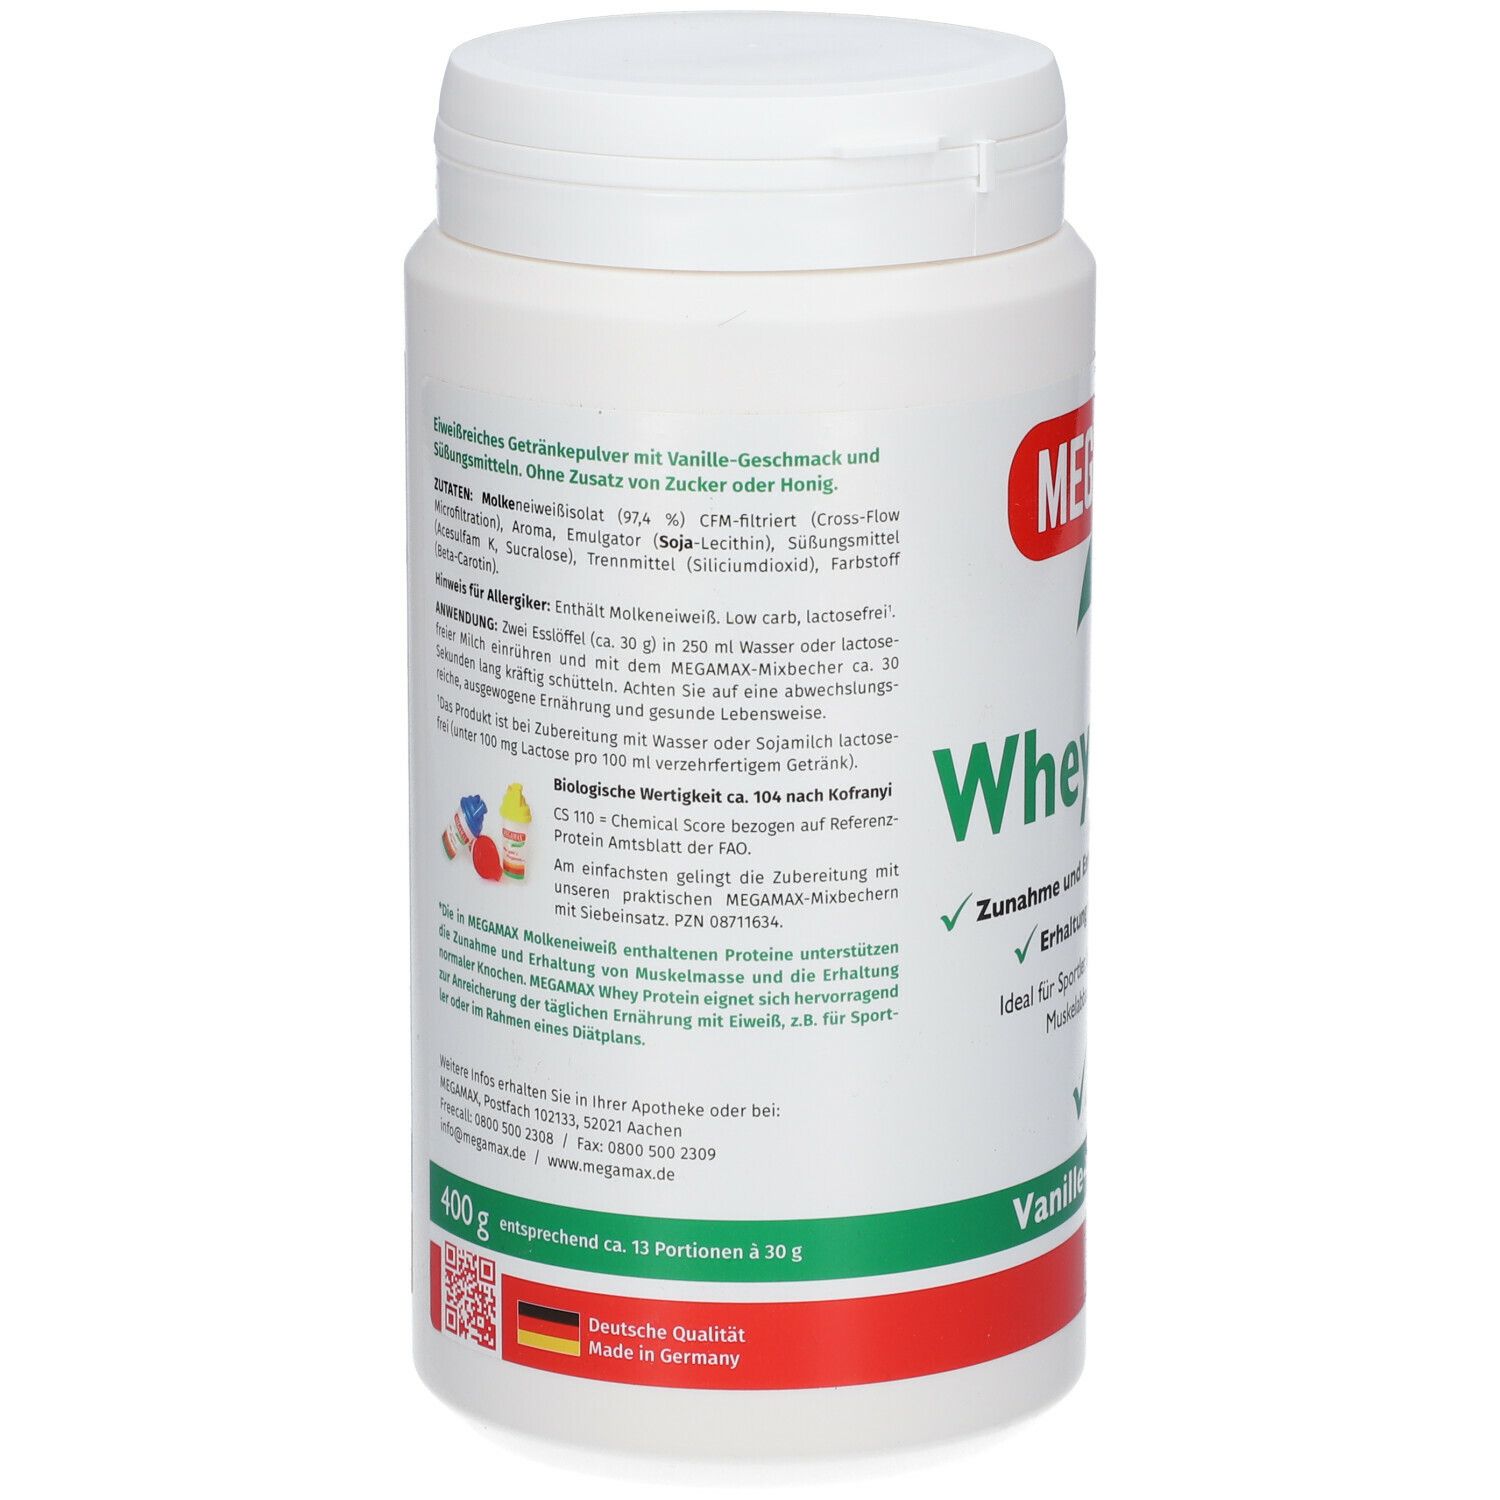 MEGAMAX® Nutrition Whey Protein Vanille-Geschmack